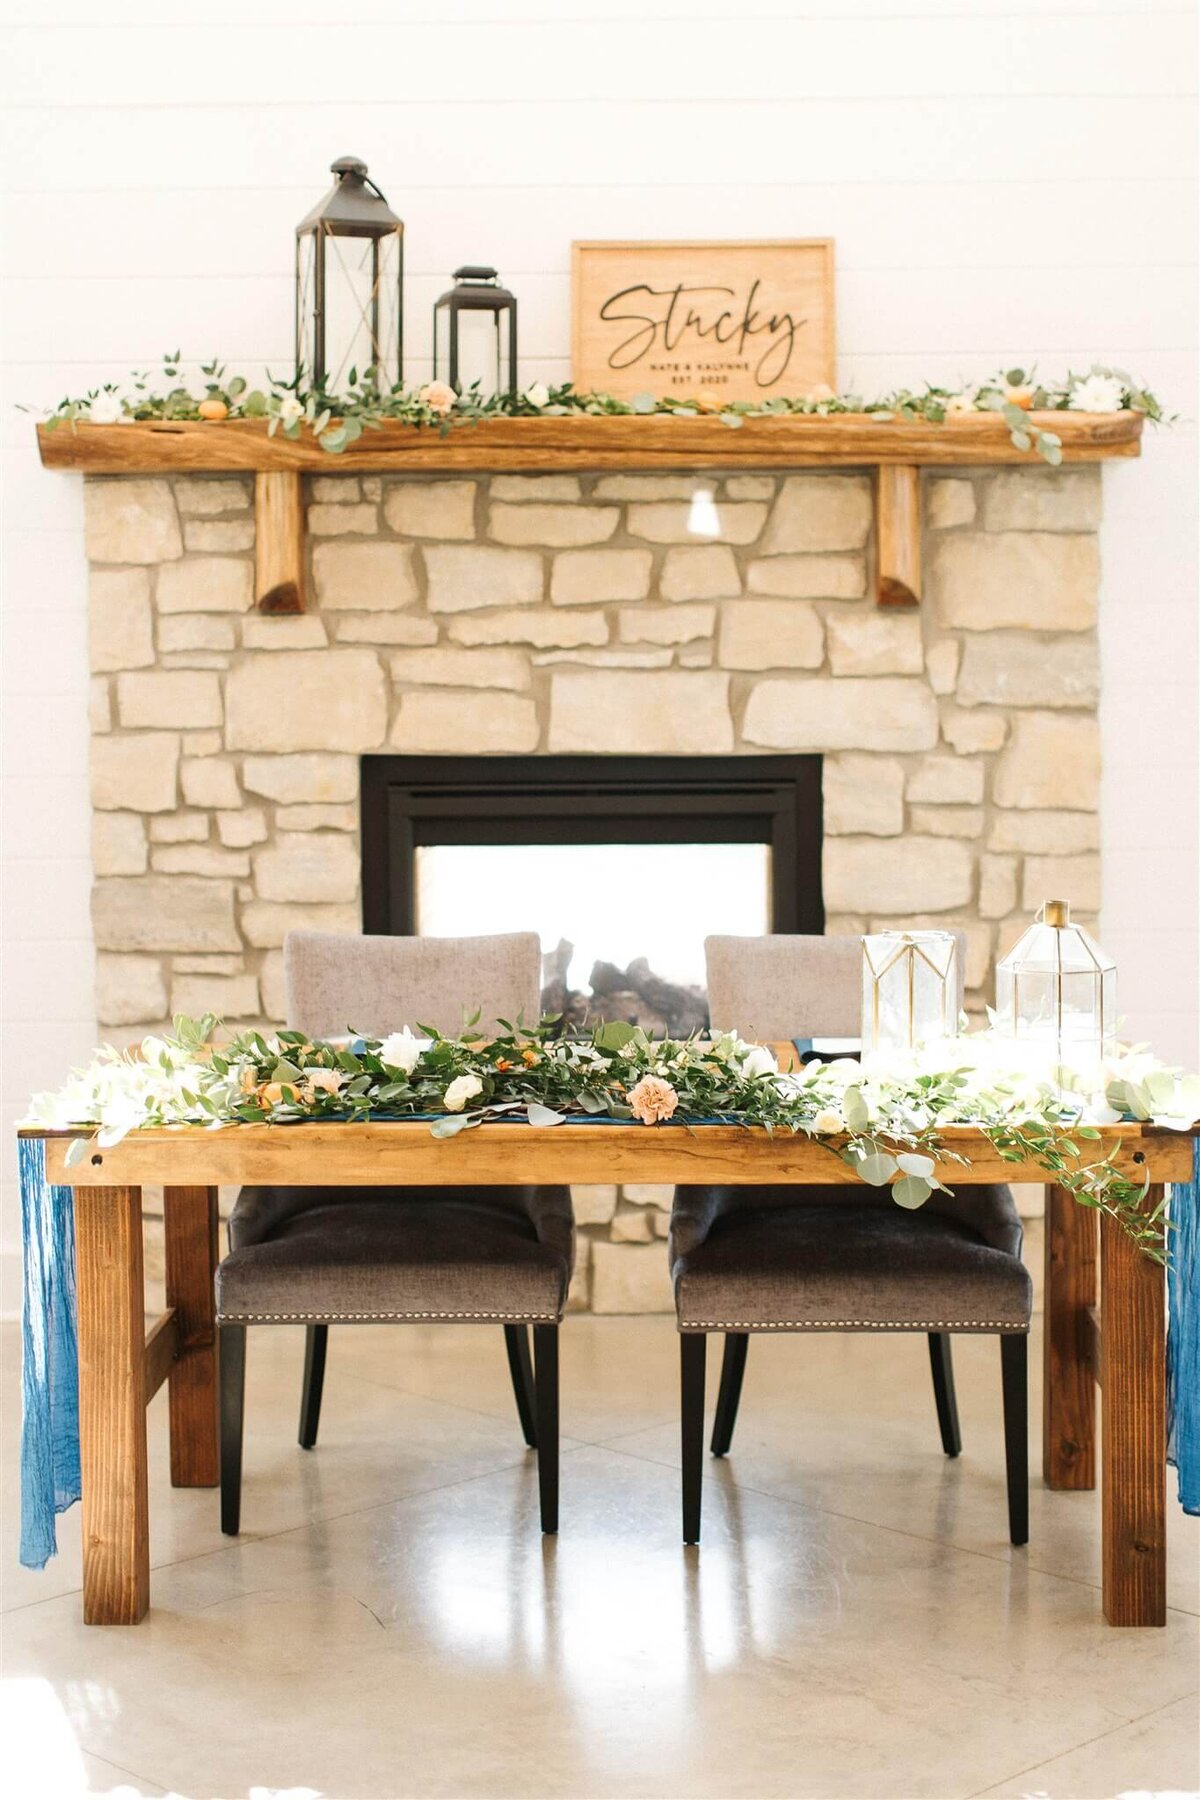 Kalynne Miller Wedding - table floral design 2